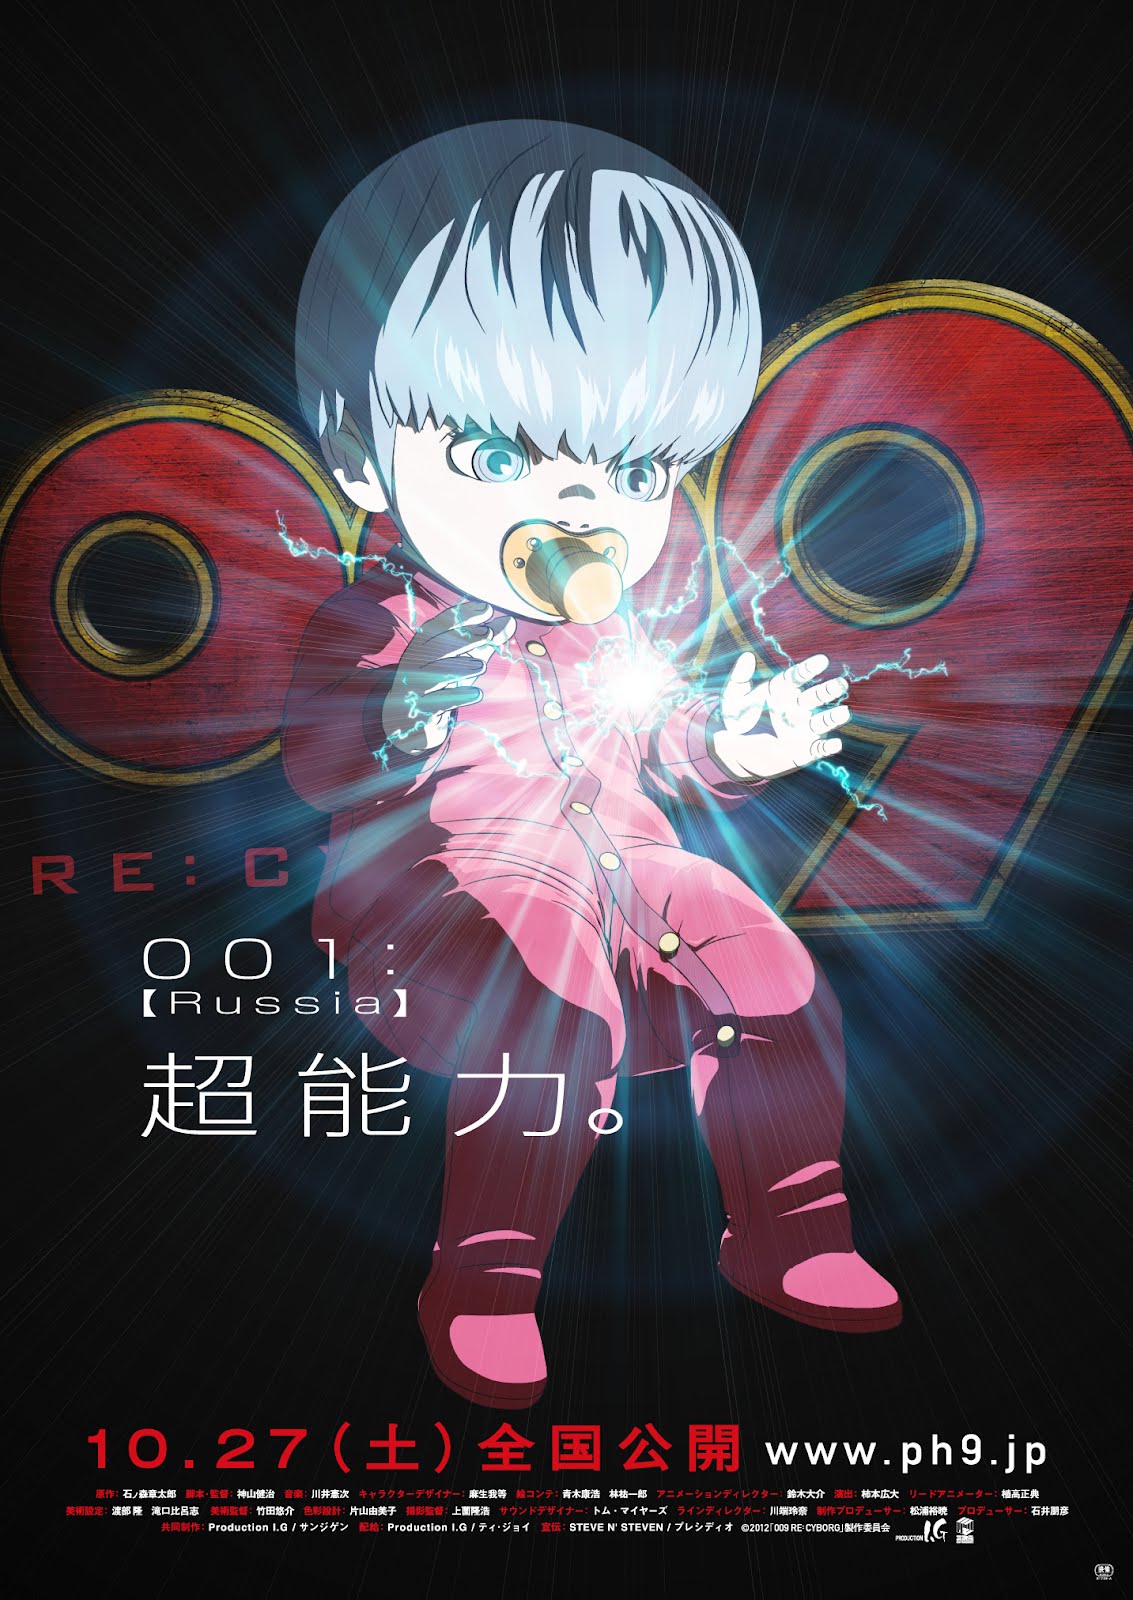 Senshi Poster 009 Re Cyborg